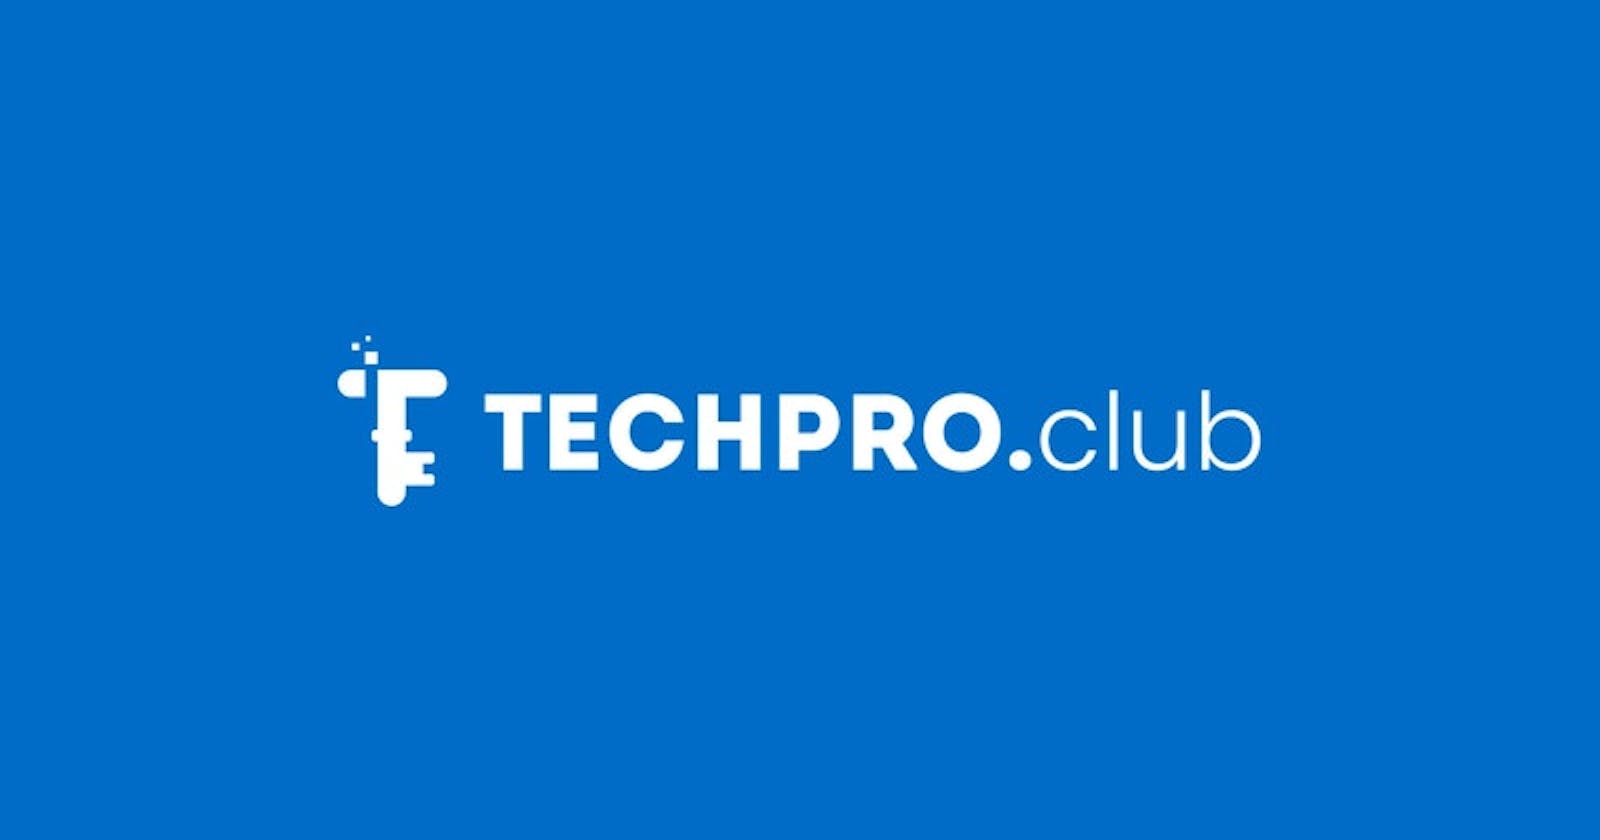 Listing techproclub to hacktoberfest